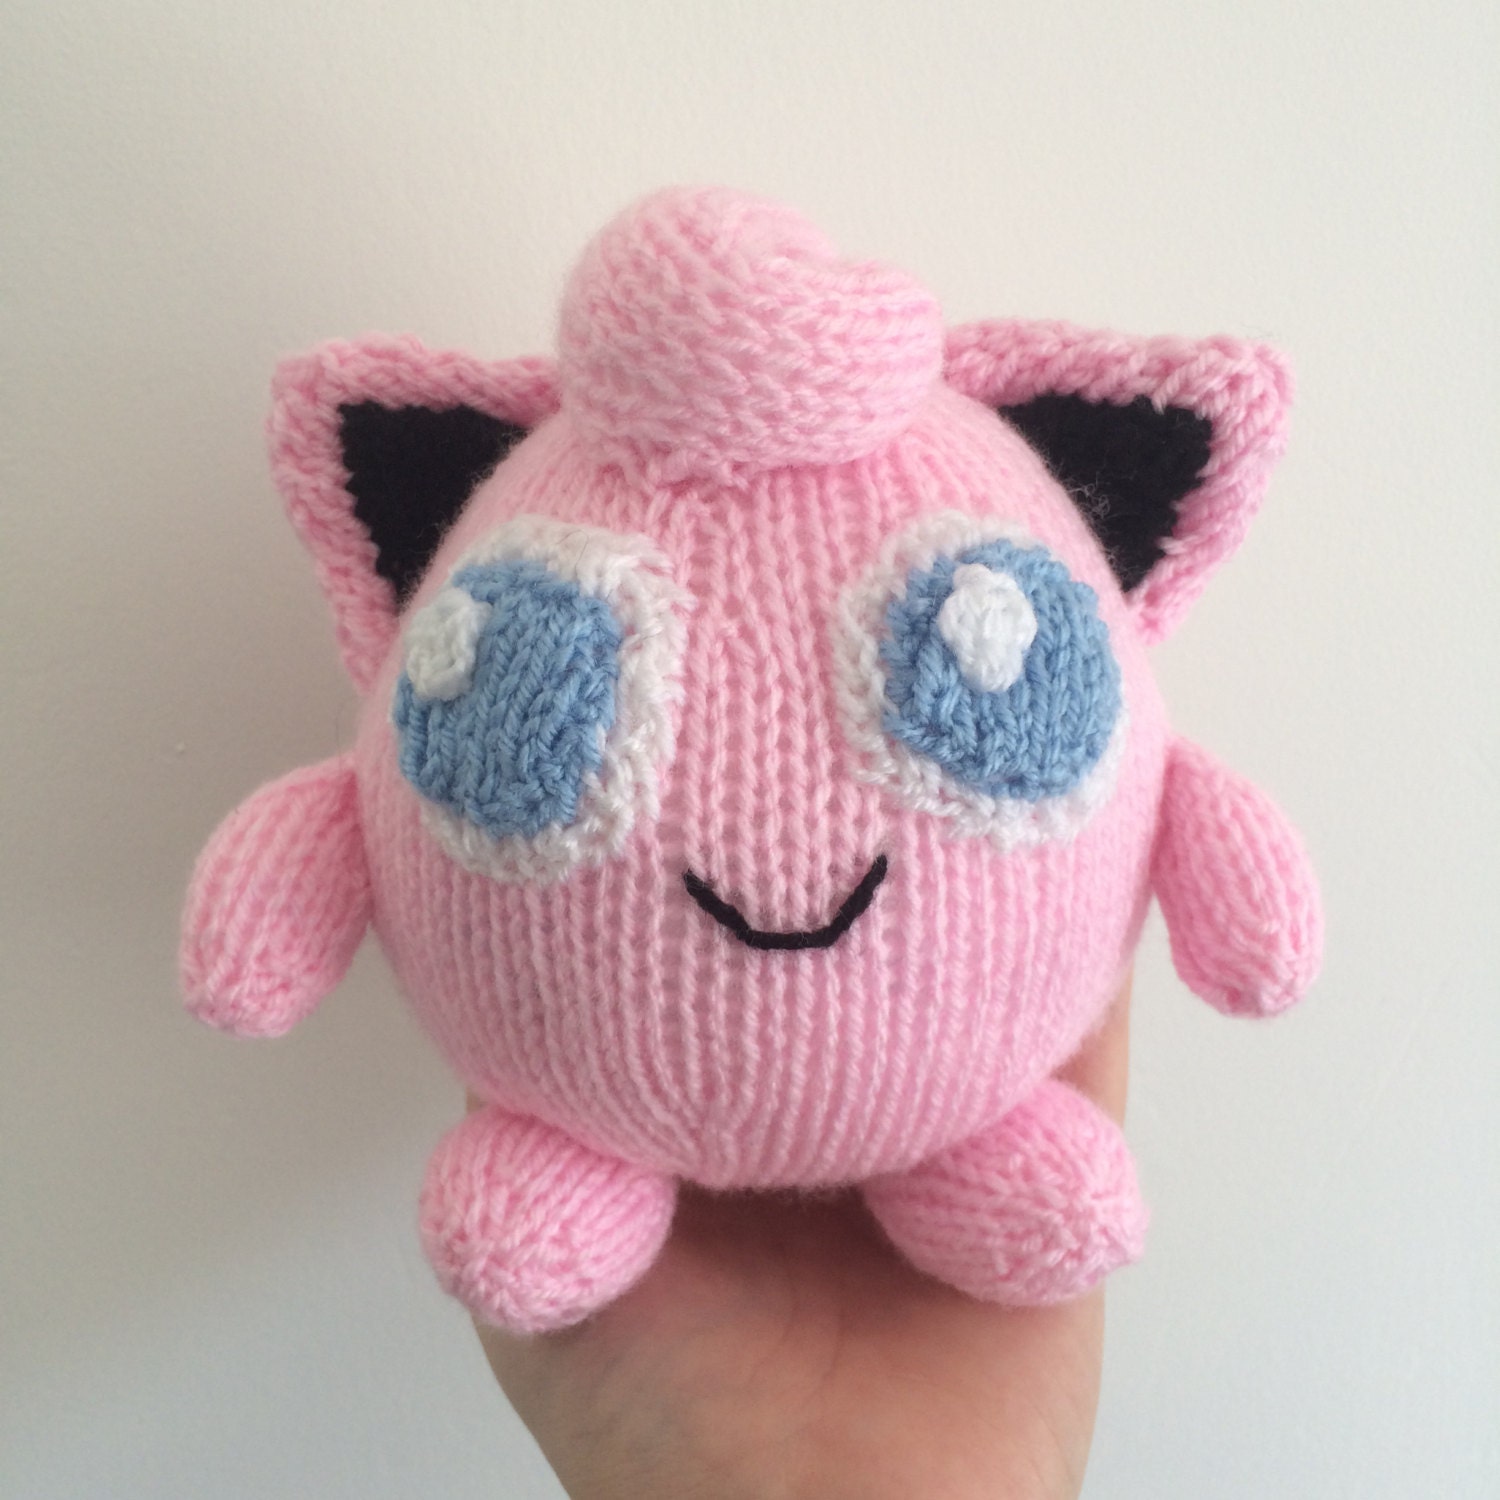 Jiggypuff knitting pattern pokemon plushie toy knit pattern